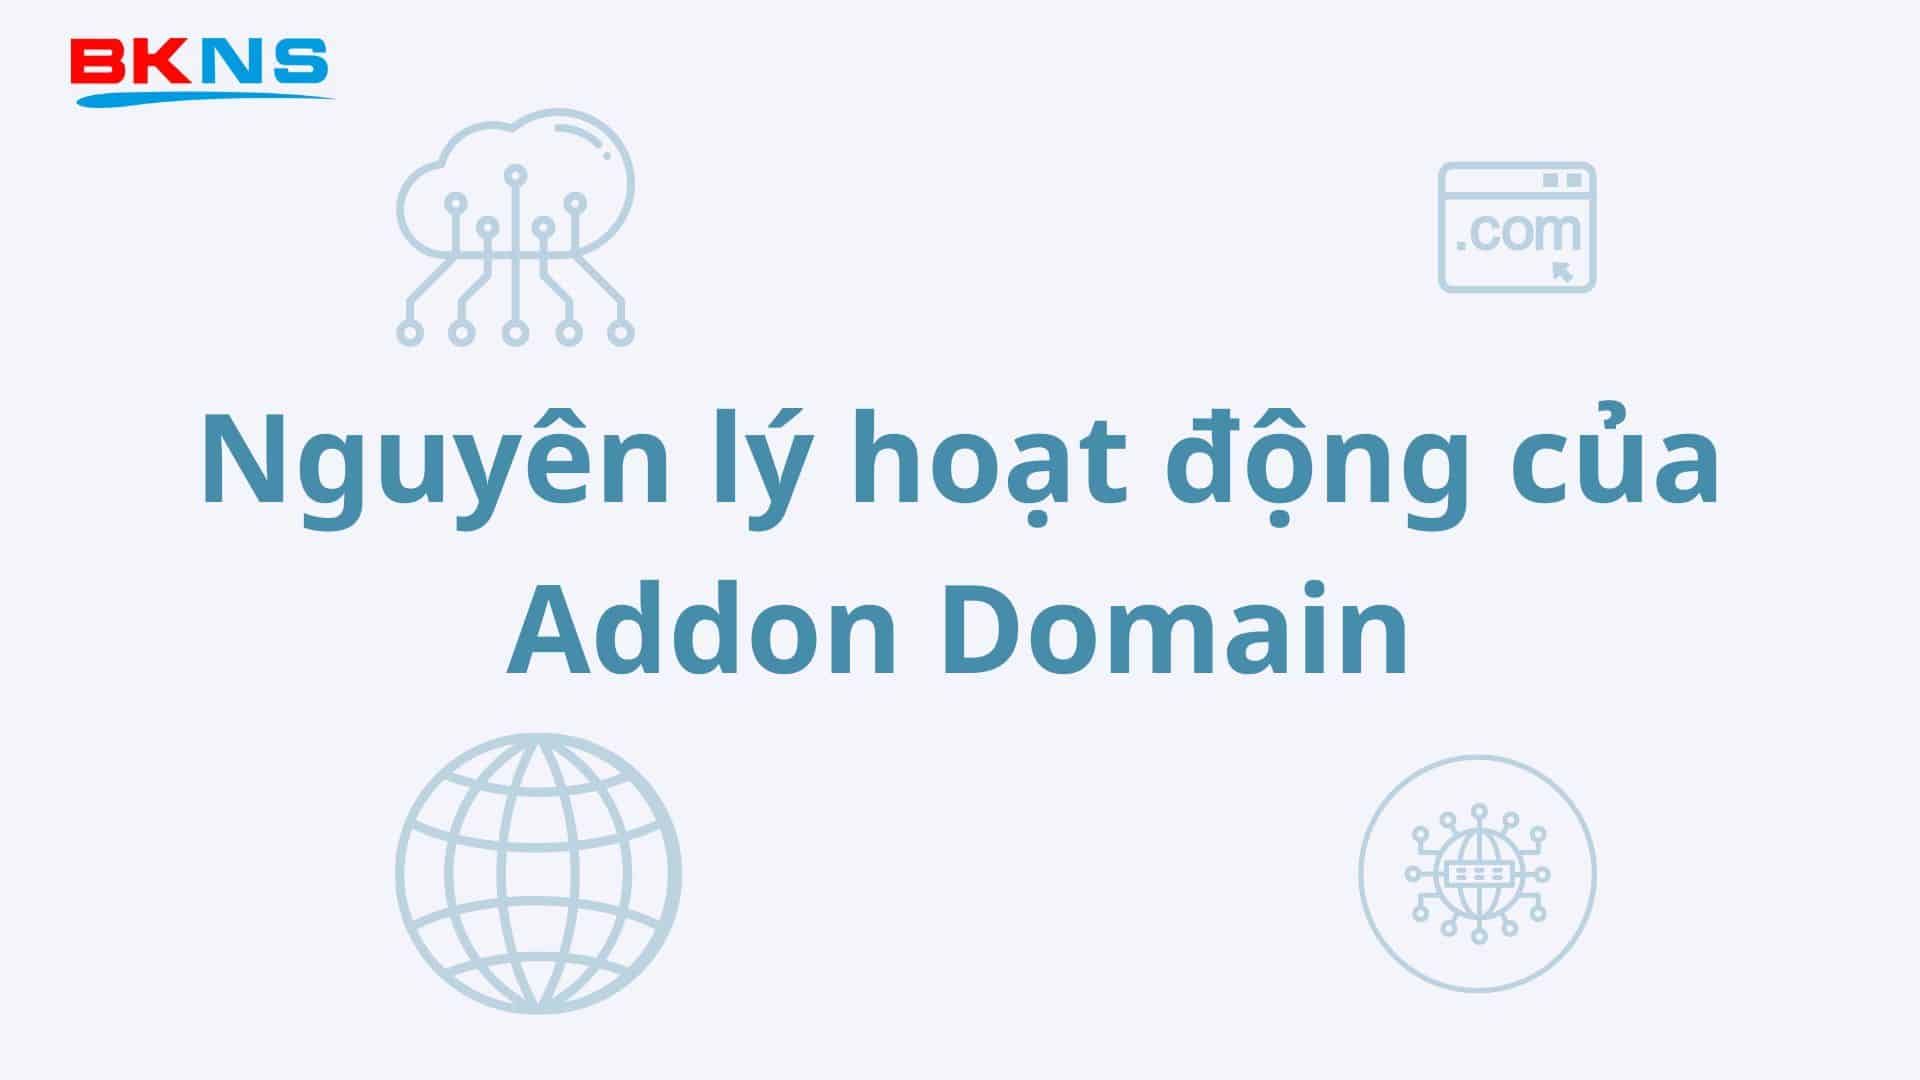 Nguyên lý hoạt động của Addon Domain là gì